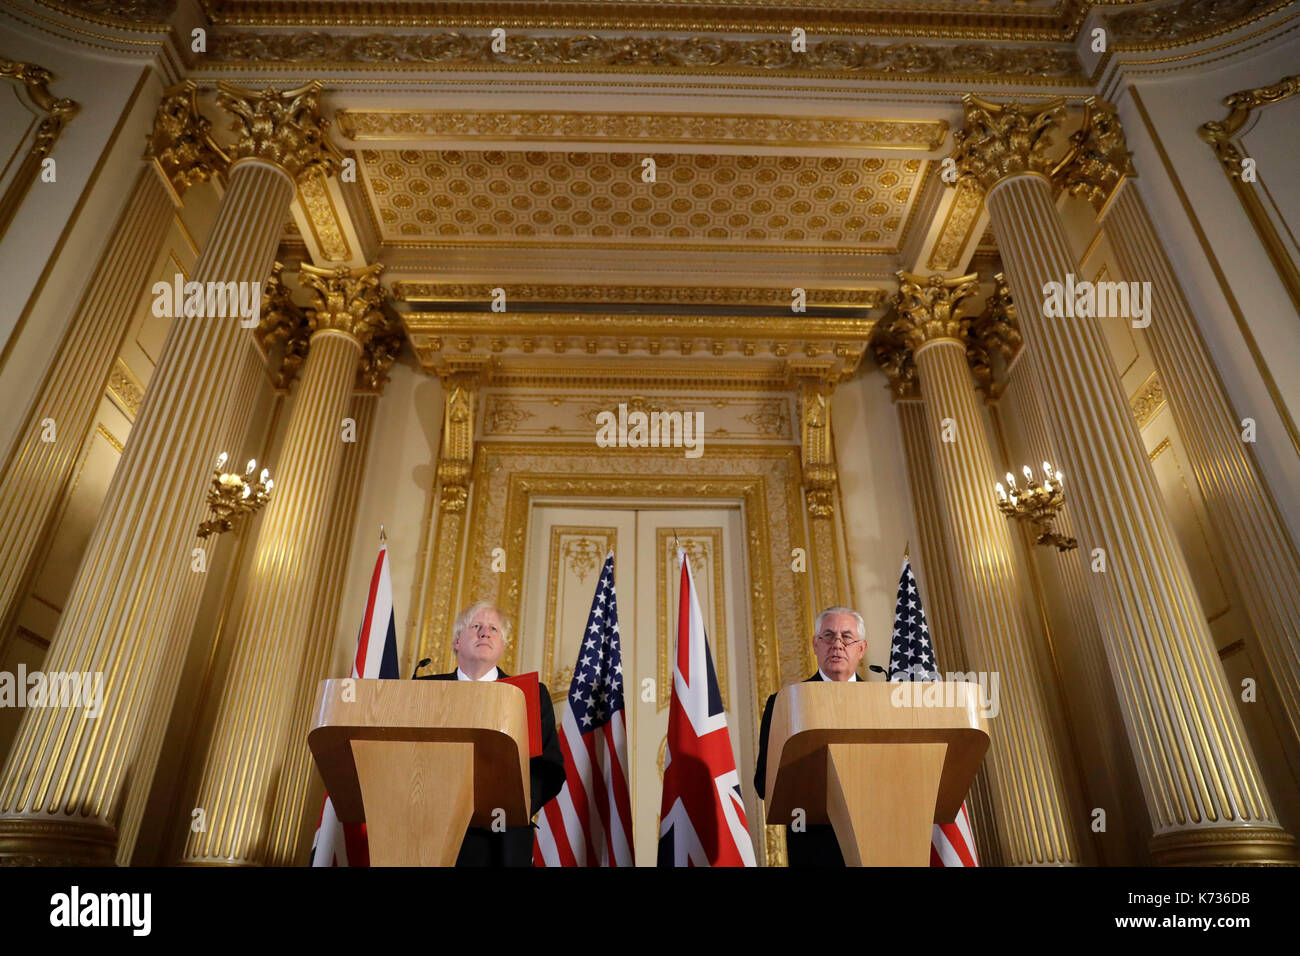 Segretario di Stato degli stati uniti, rex tillerson (destra) e segretario di Stato per gli affari esteri boris johnson durante una conferenza stampa dopo la loro riunione sulla Libia a Lancaster House di Londra. Foto Stock